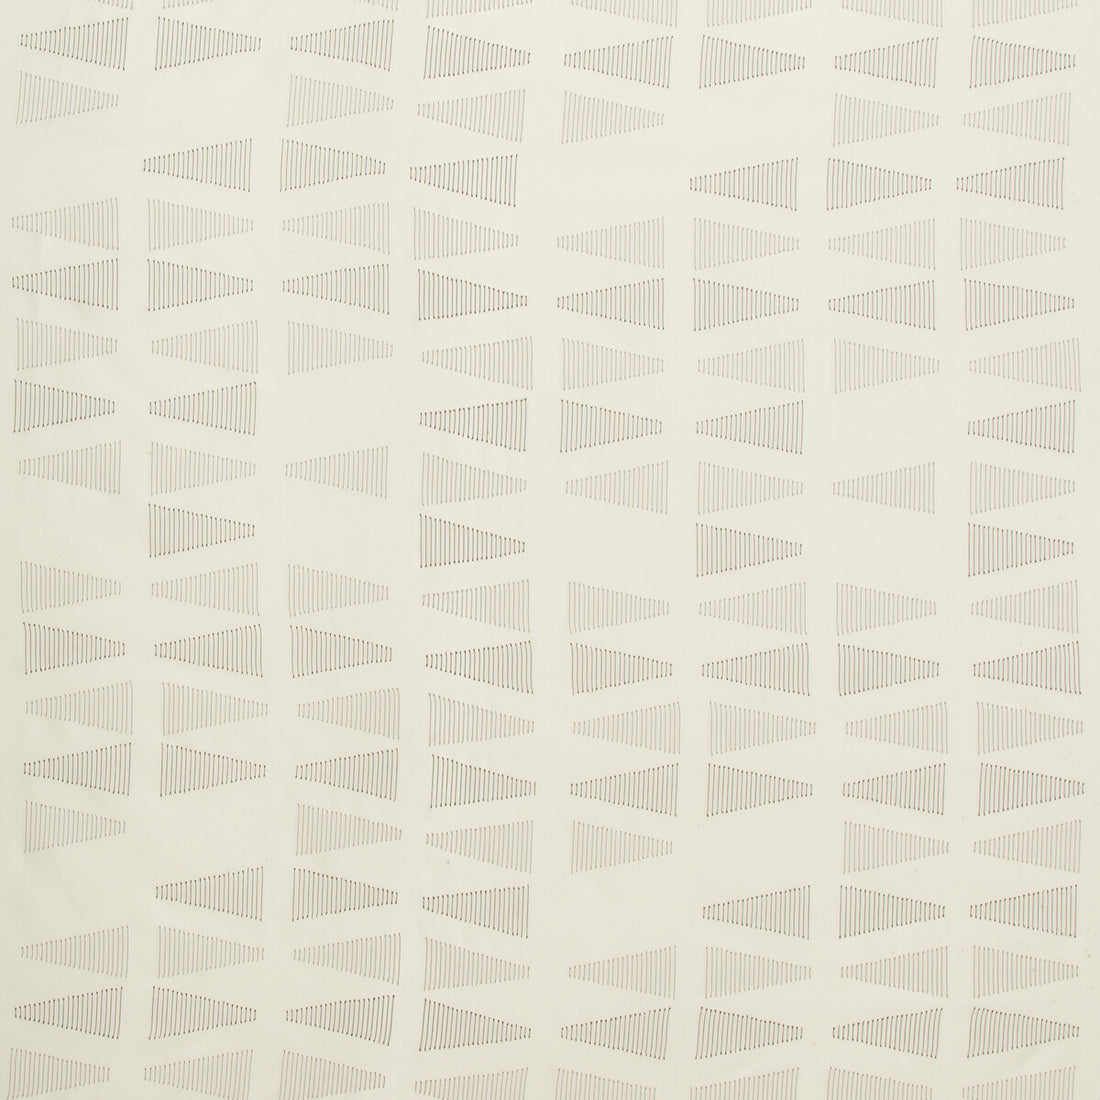 Kravet Design fabric in 4736-106 color - pattern 4736.106.0 - by Kravet Design